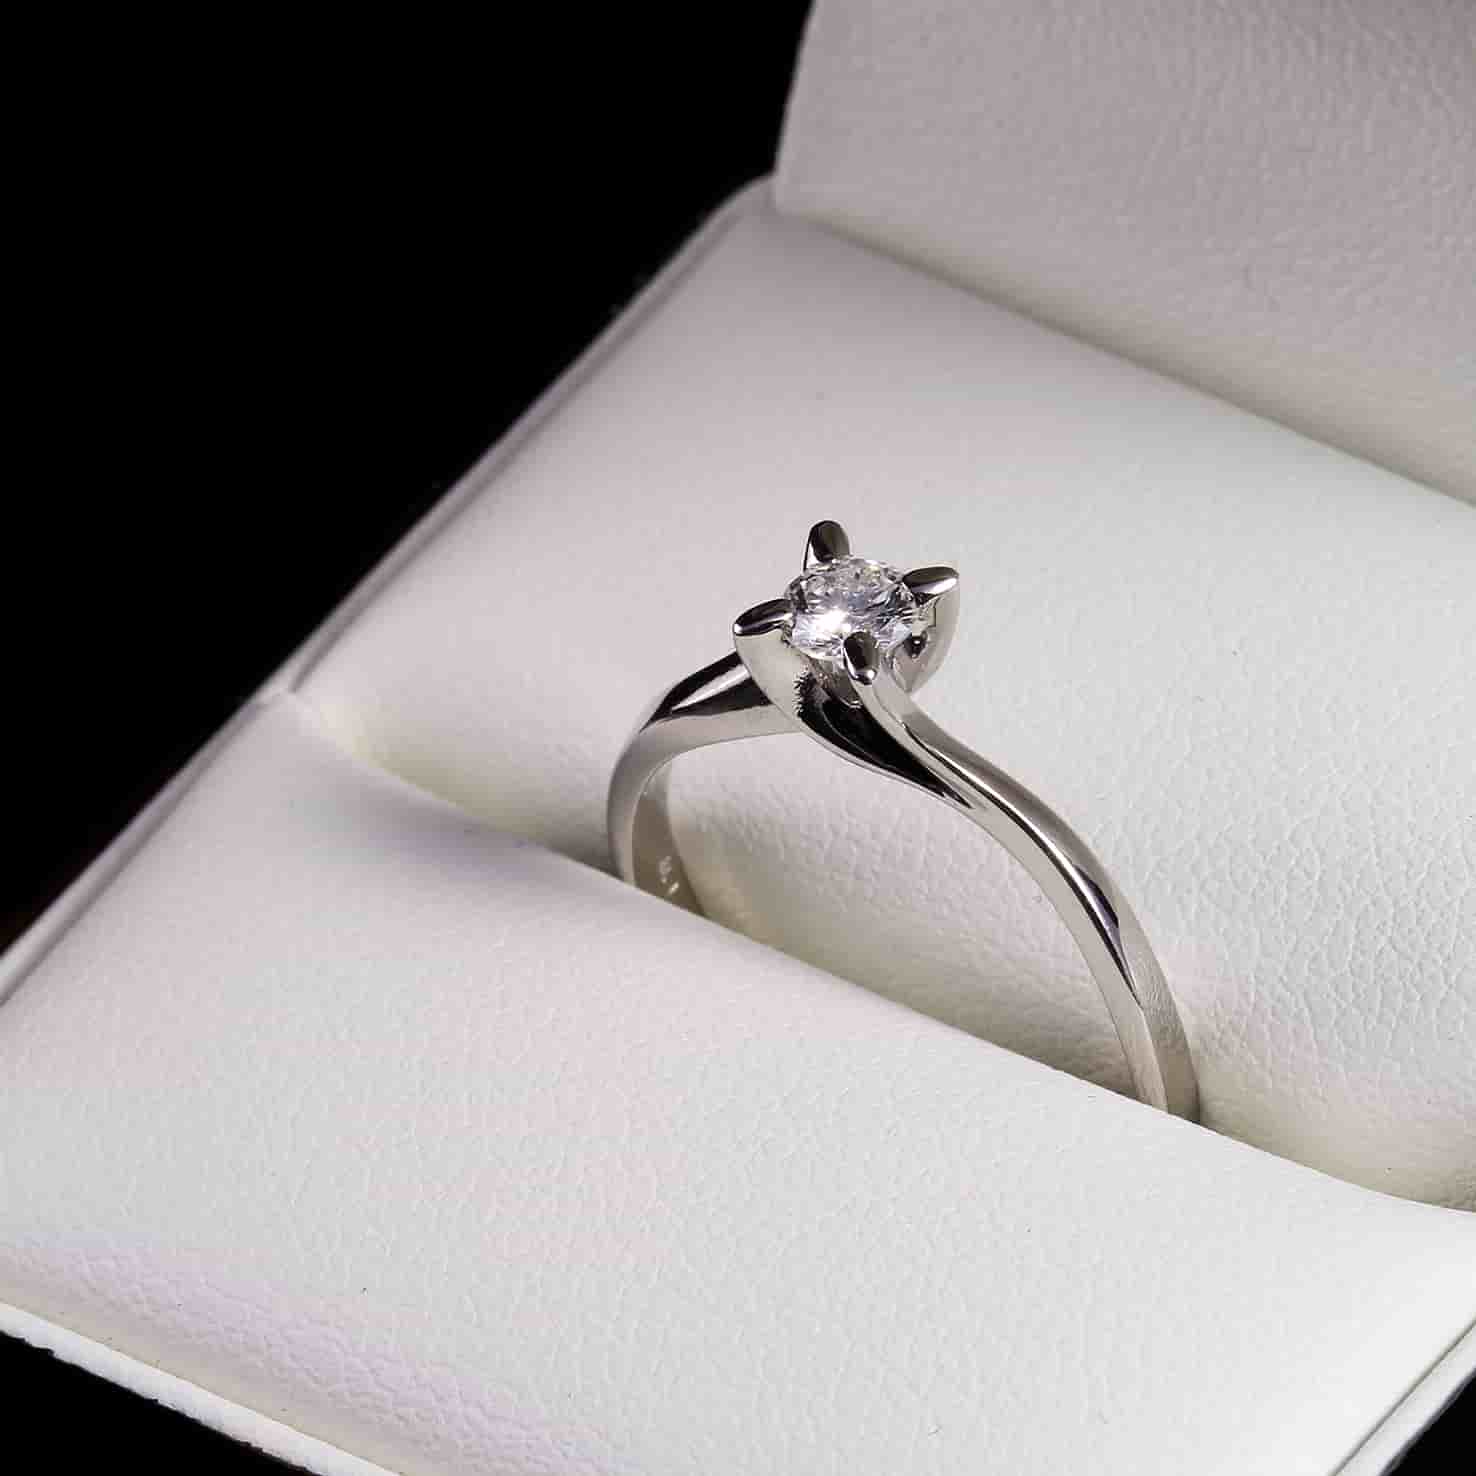 Fehérarany Gyémánt Gyűrűk: Időtlen Szépség az Ékszerdobozban